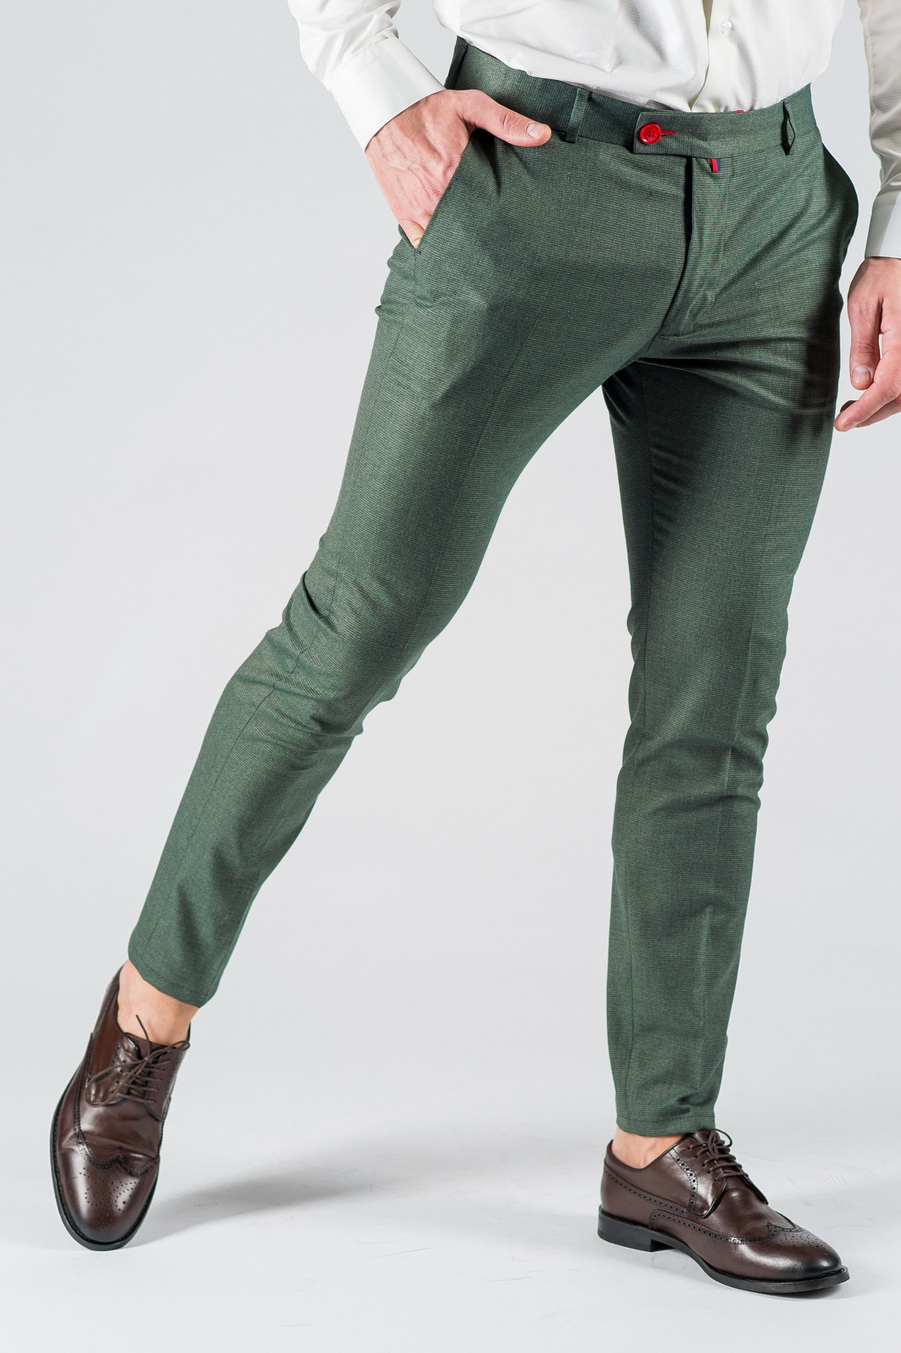 Зауженные мужские брюки зеленого цвета. Арт.:6-1325-3 – купить в магазинемужской одежды Smartcasuals